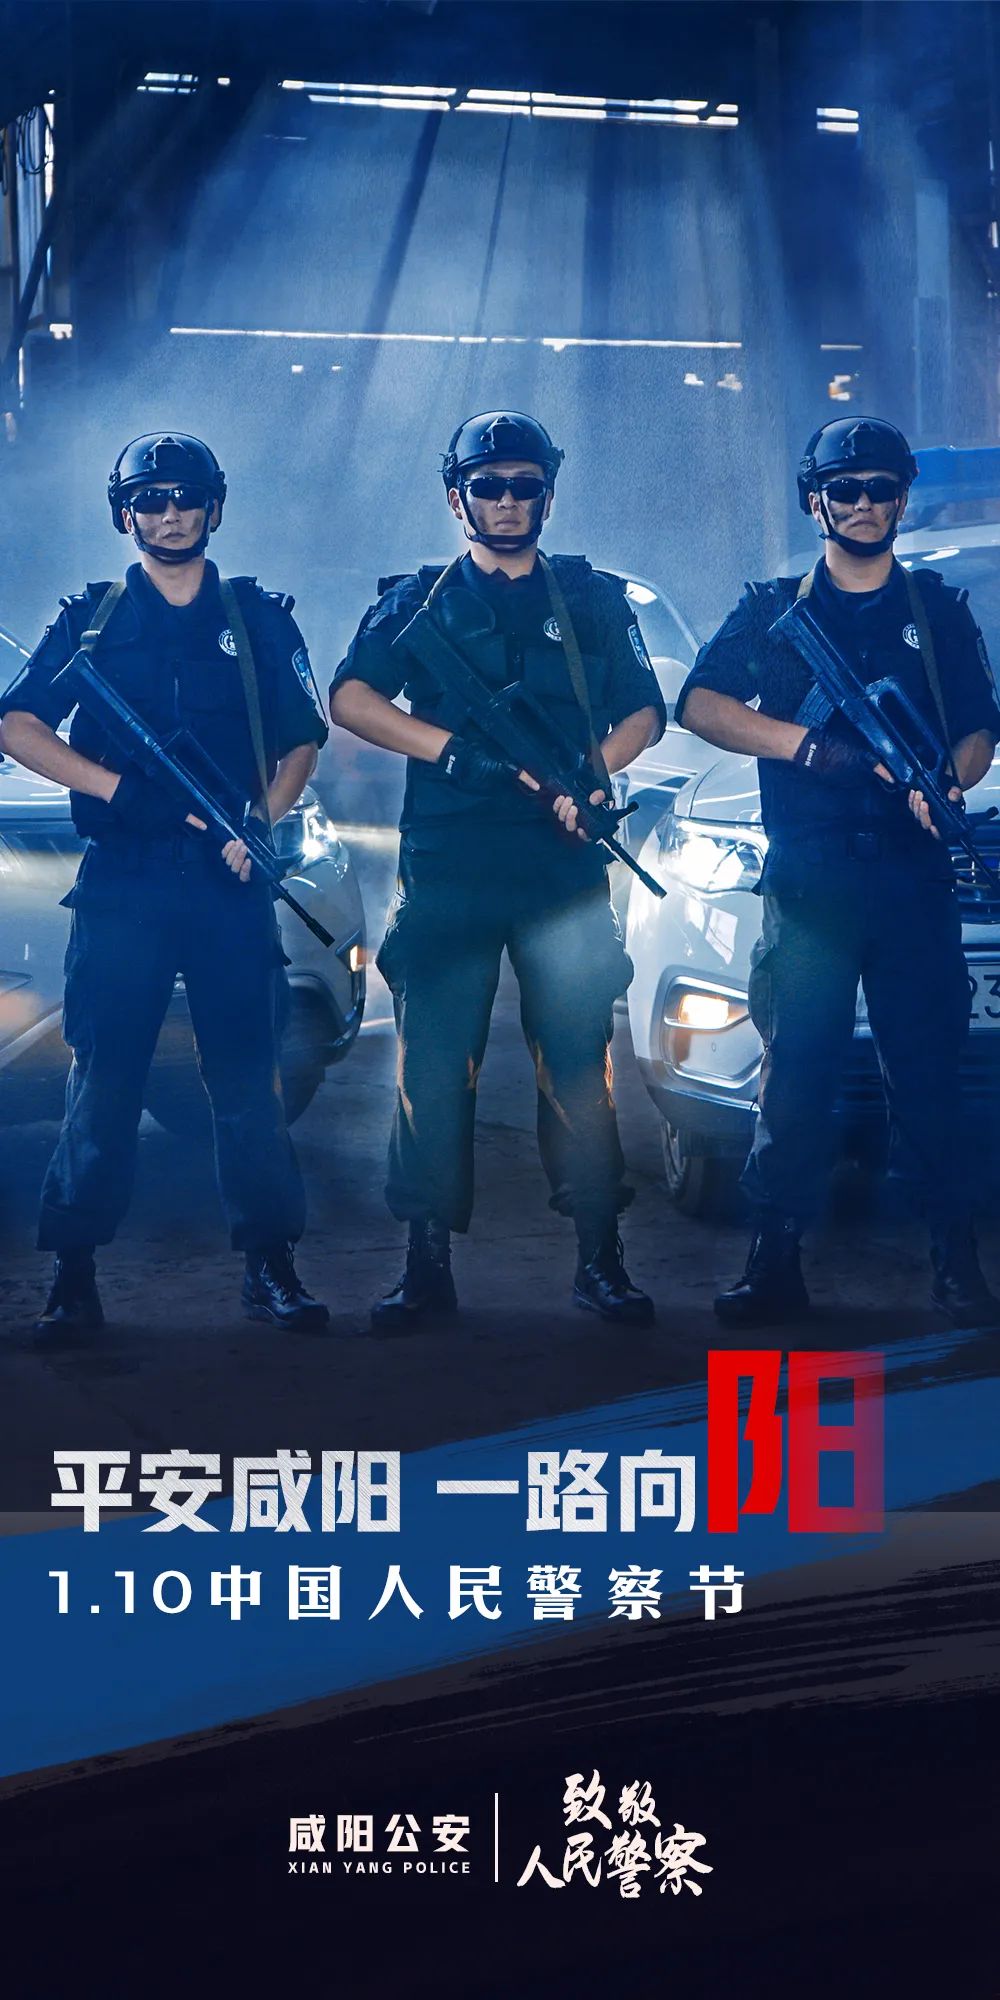 警察节丨咸阳公安原创海报第二季来袭